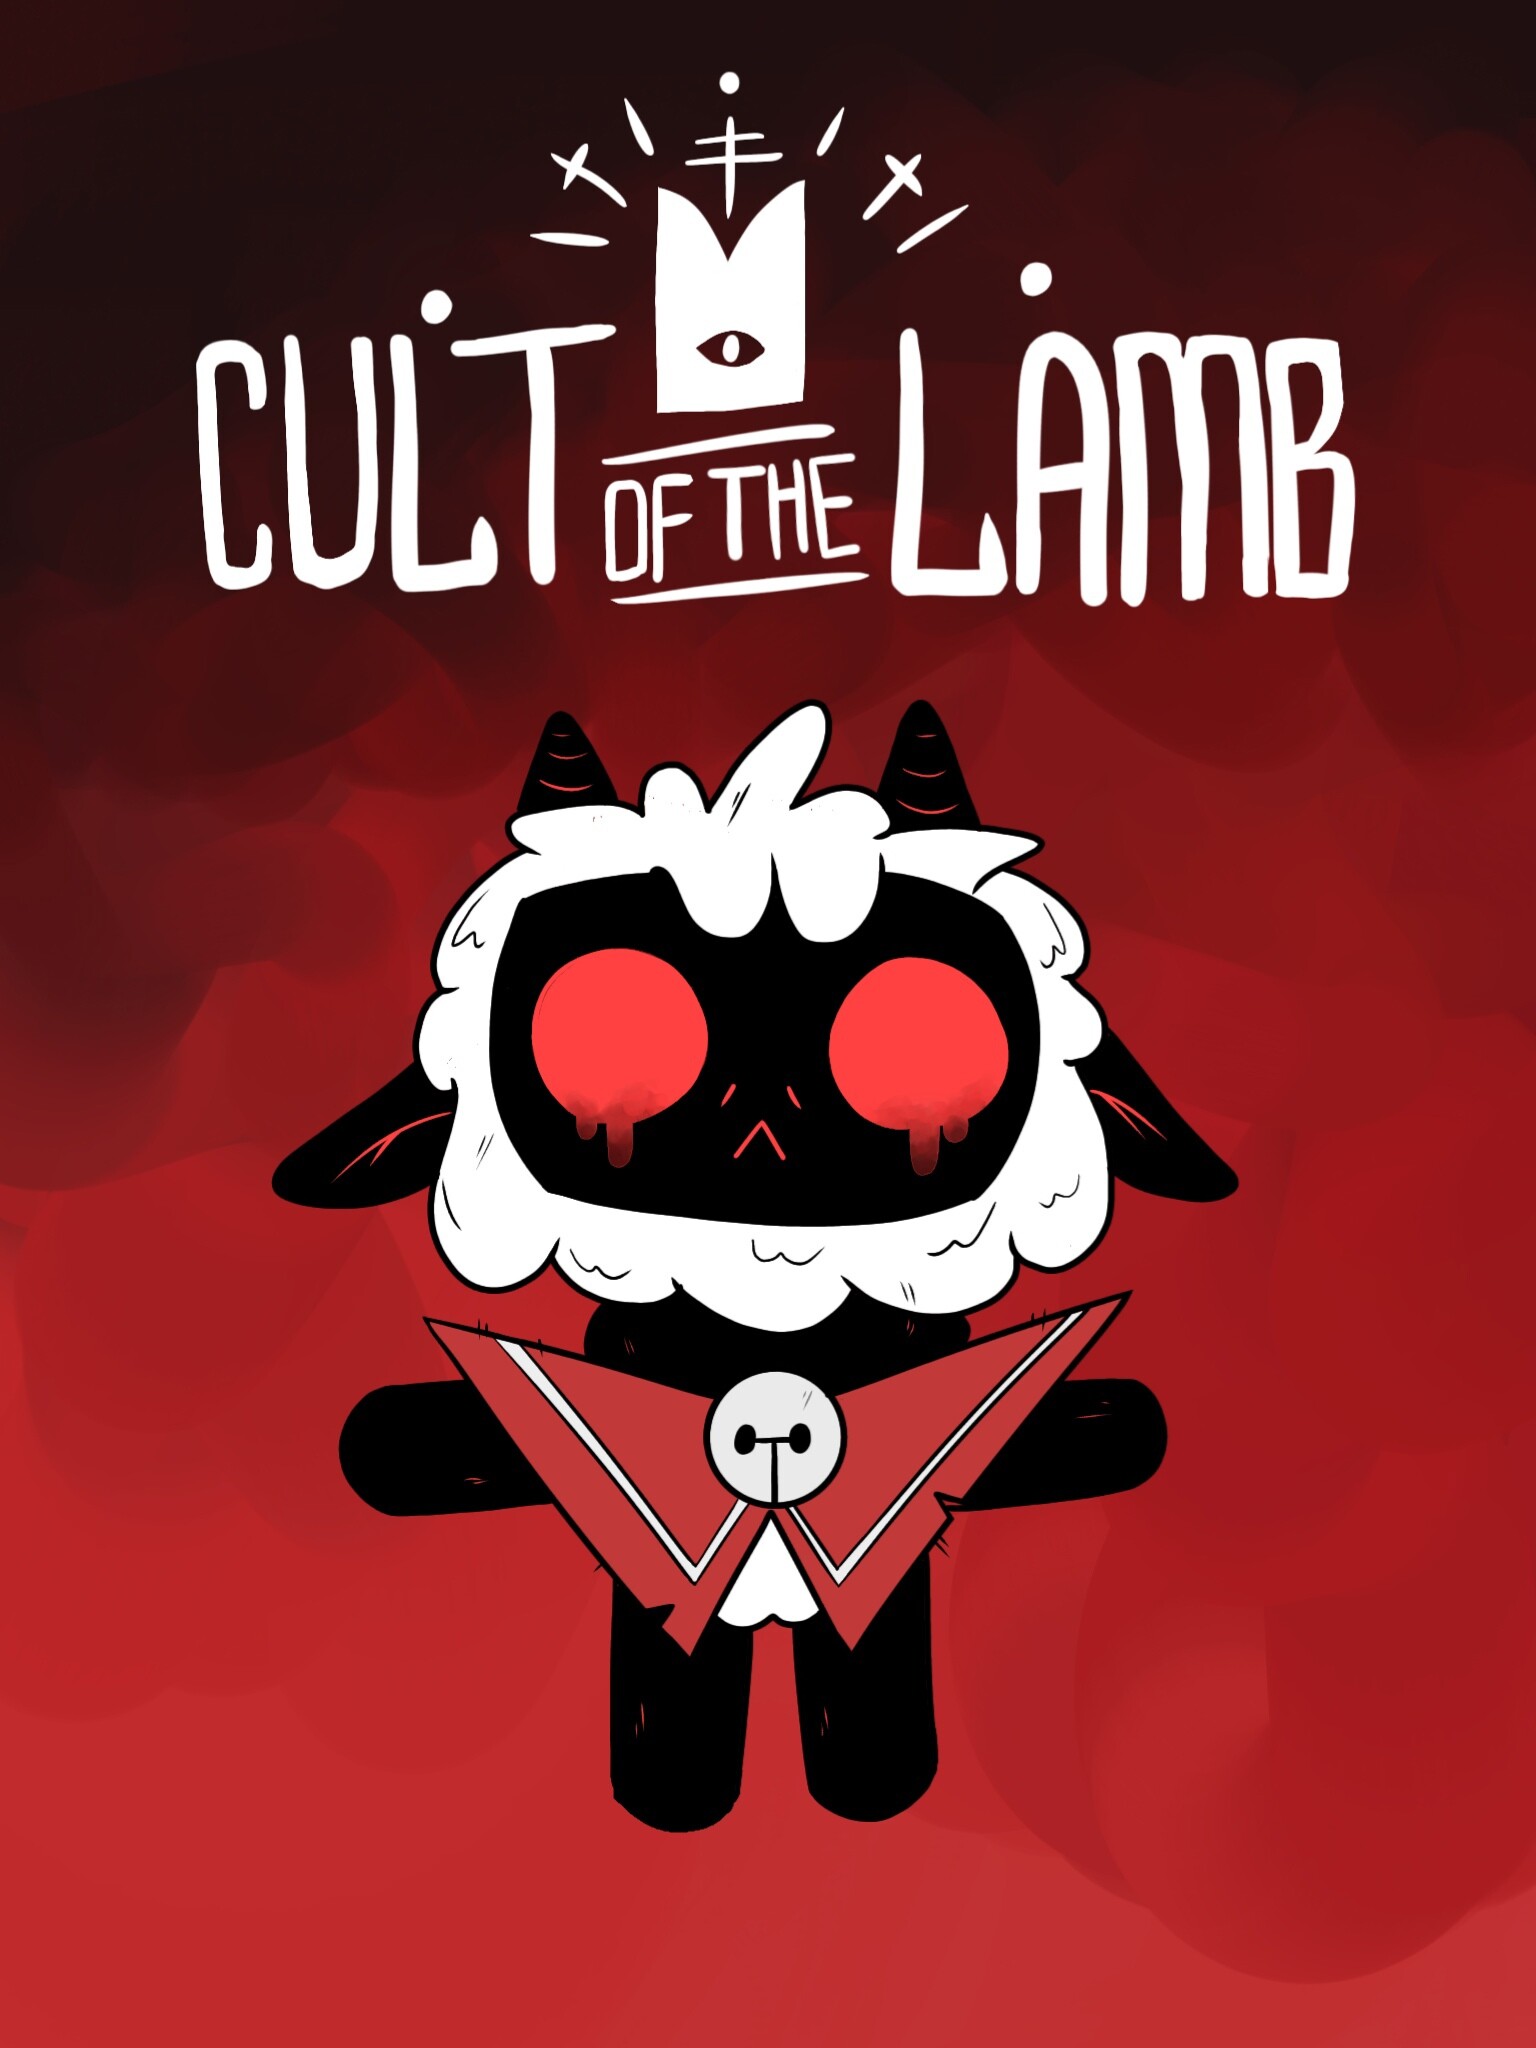 Cult of the Lamb no Steam